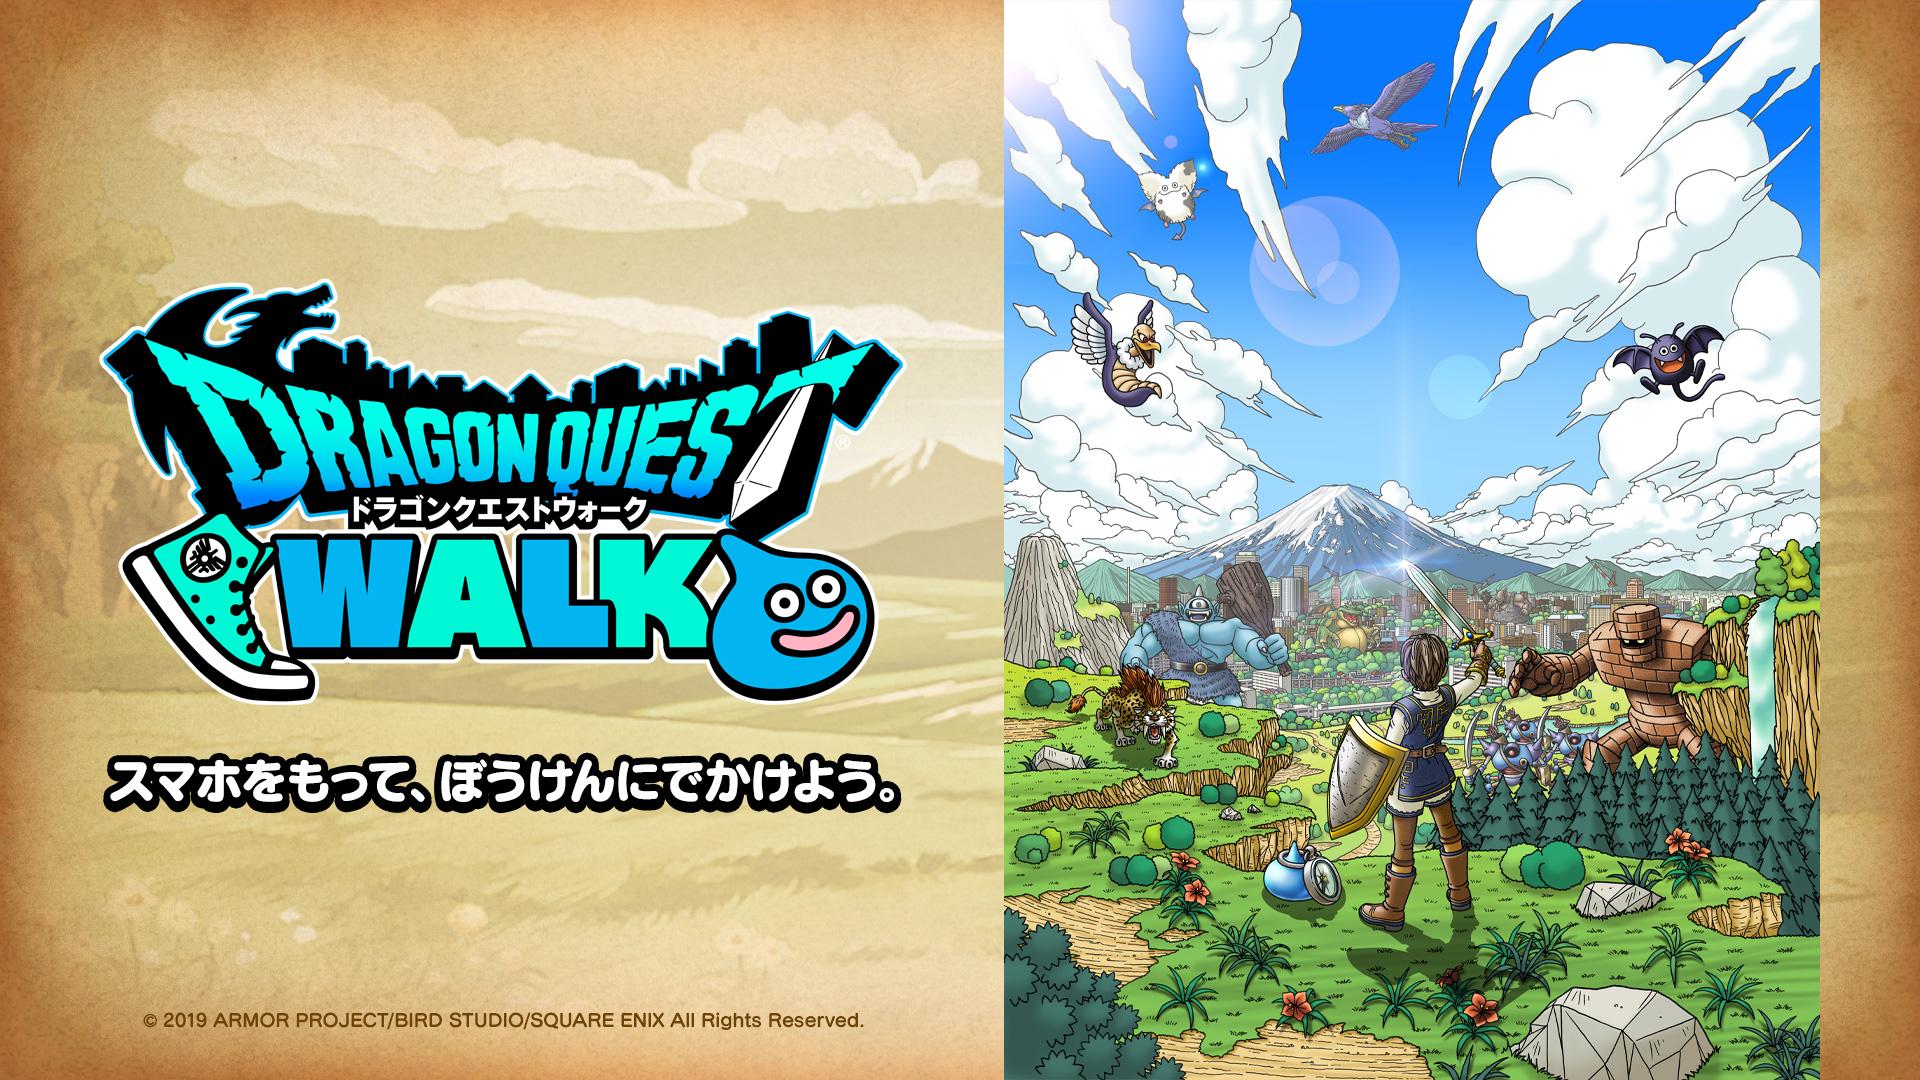 أعلنت Square Enix عن تاريخ الإصدار الخاص بـ 'Dragon Quest Walk' لنظامي التشغيل iOS و Android